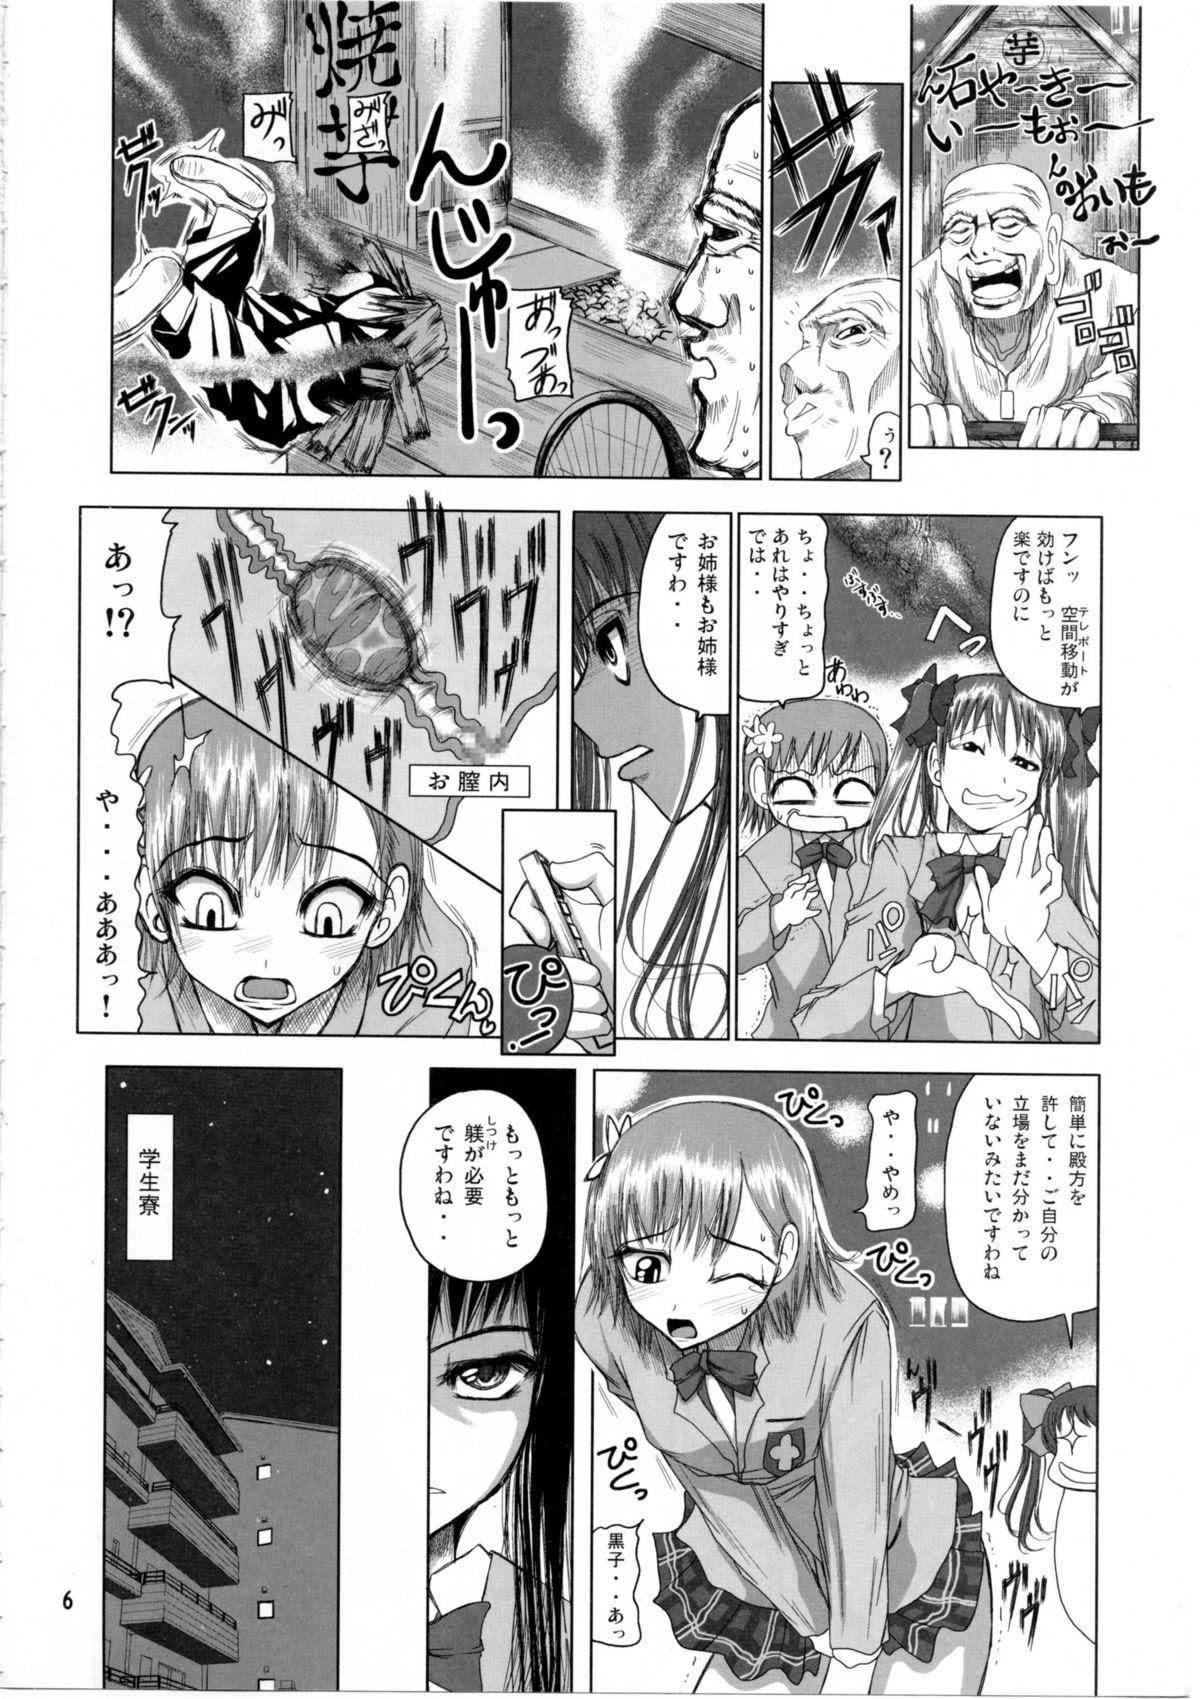 Cams Shirai Kuroko Sensei no Spooky tarte - Toaru kagaku no railgun Real bout high school Bwc - Page 5